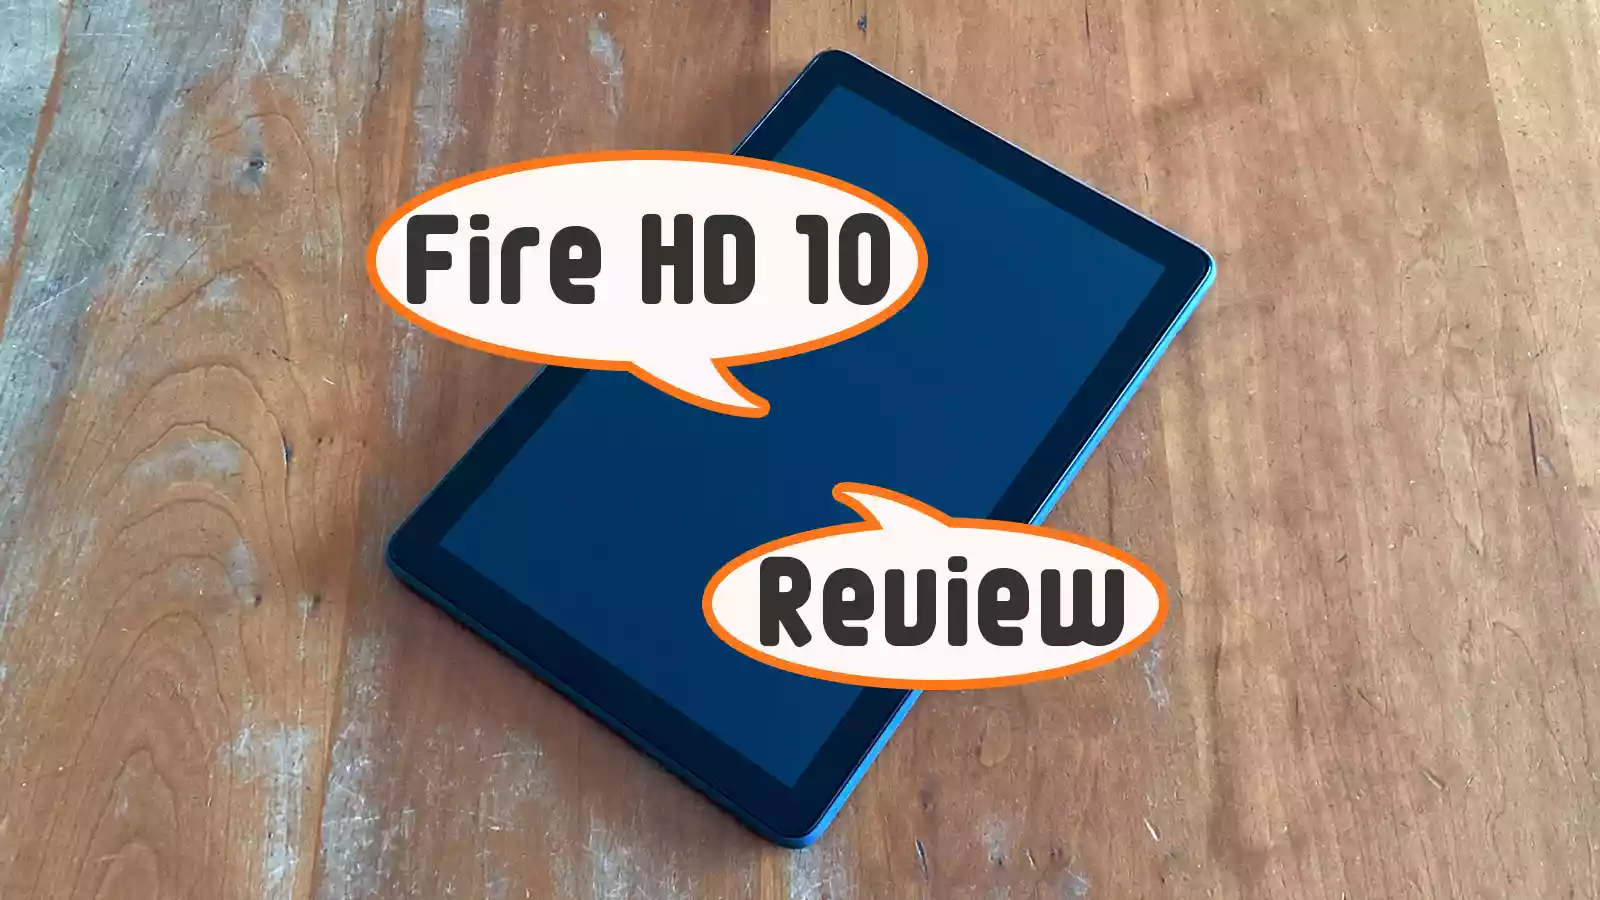 第11世代 2021年モデル】Fire HD 10 タブレット新旧モデル比較 